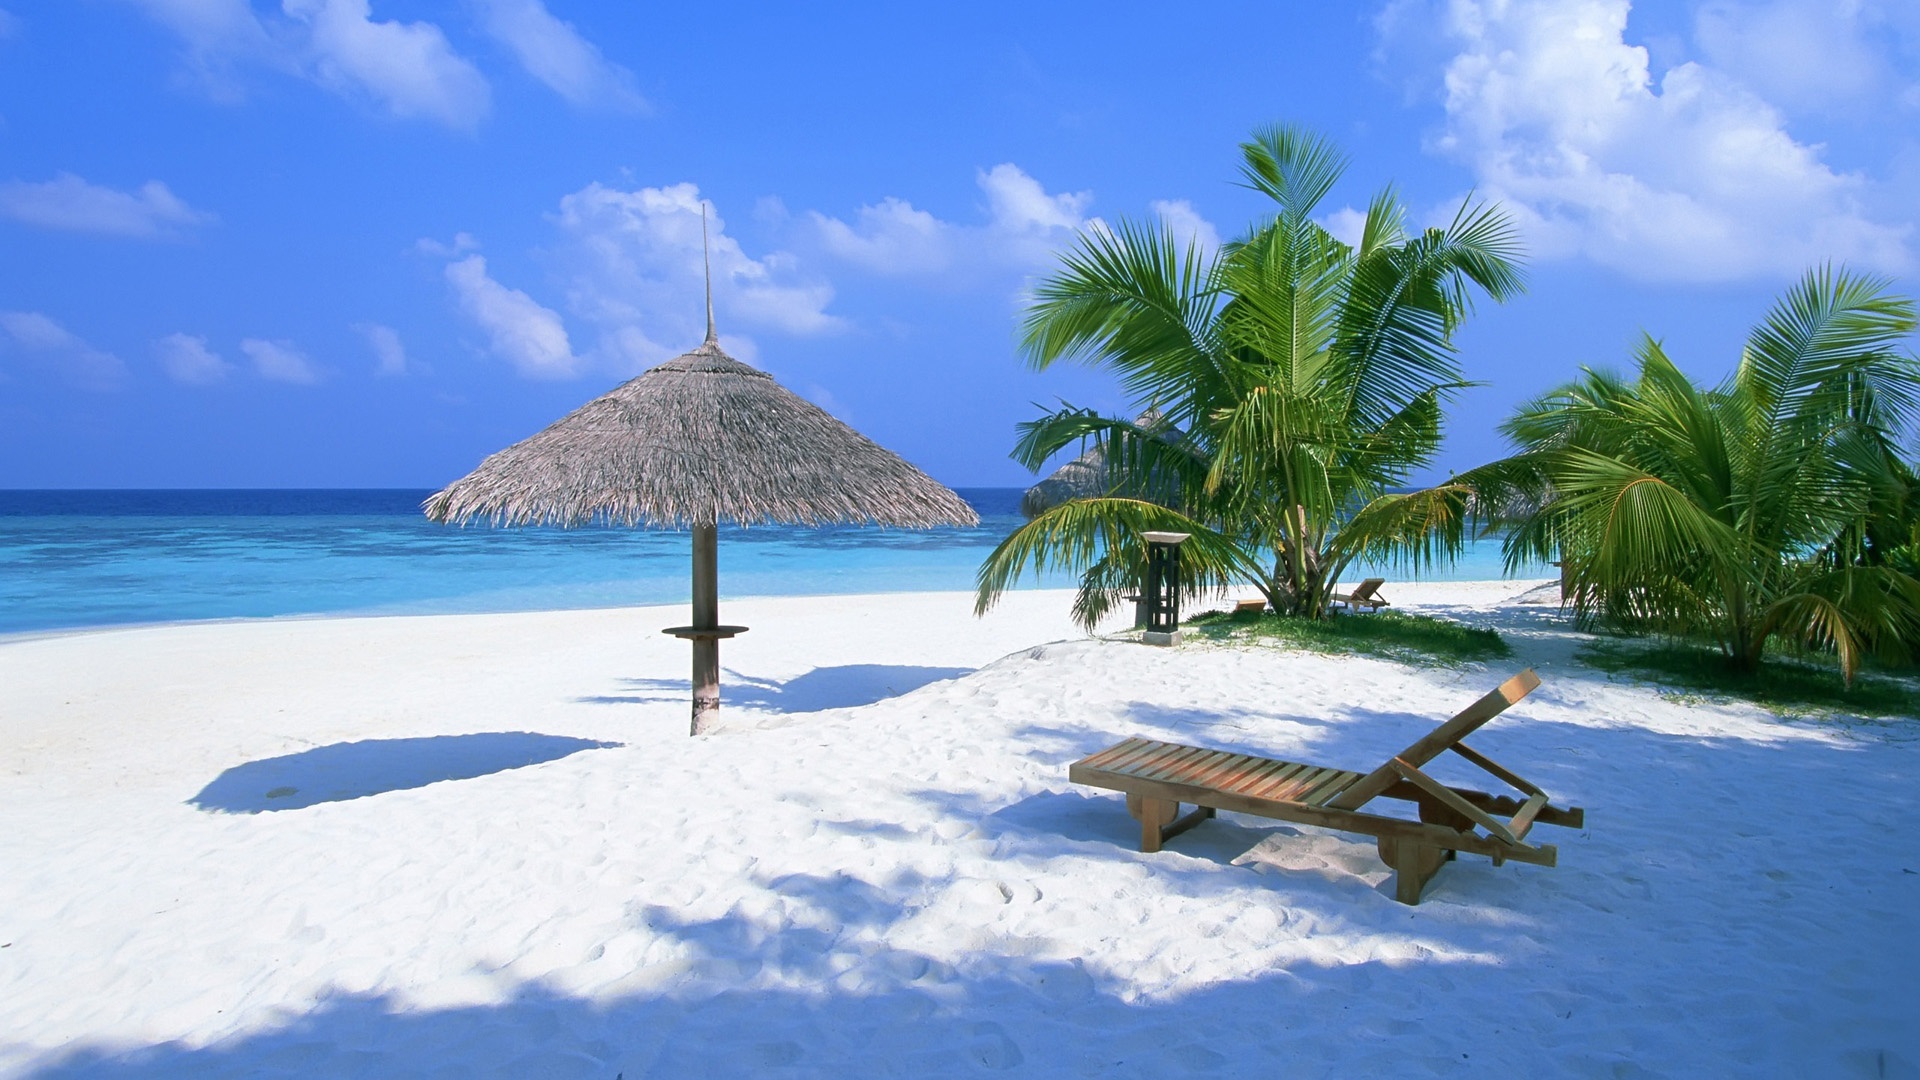 夏天 巴哈马 海洋 沙滩 躺椅 棕榈树 夏天风景桌面壁纸壁纸